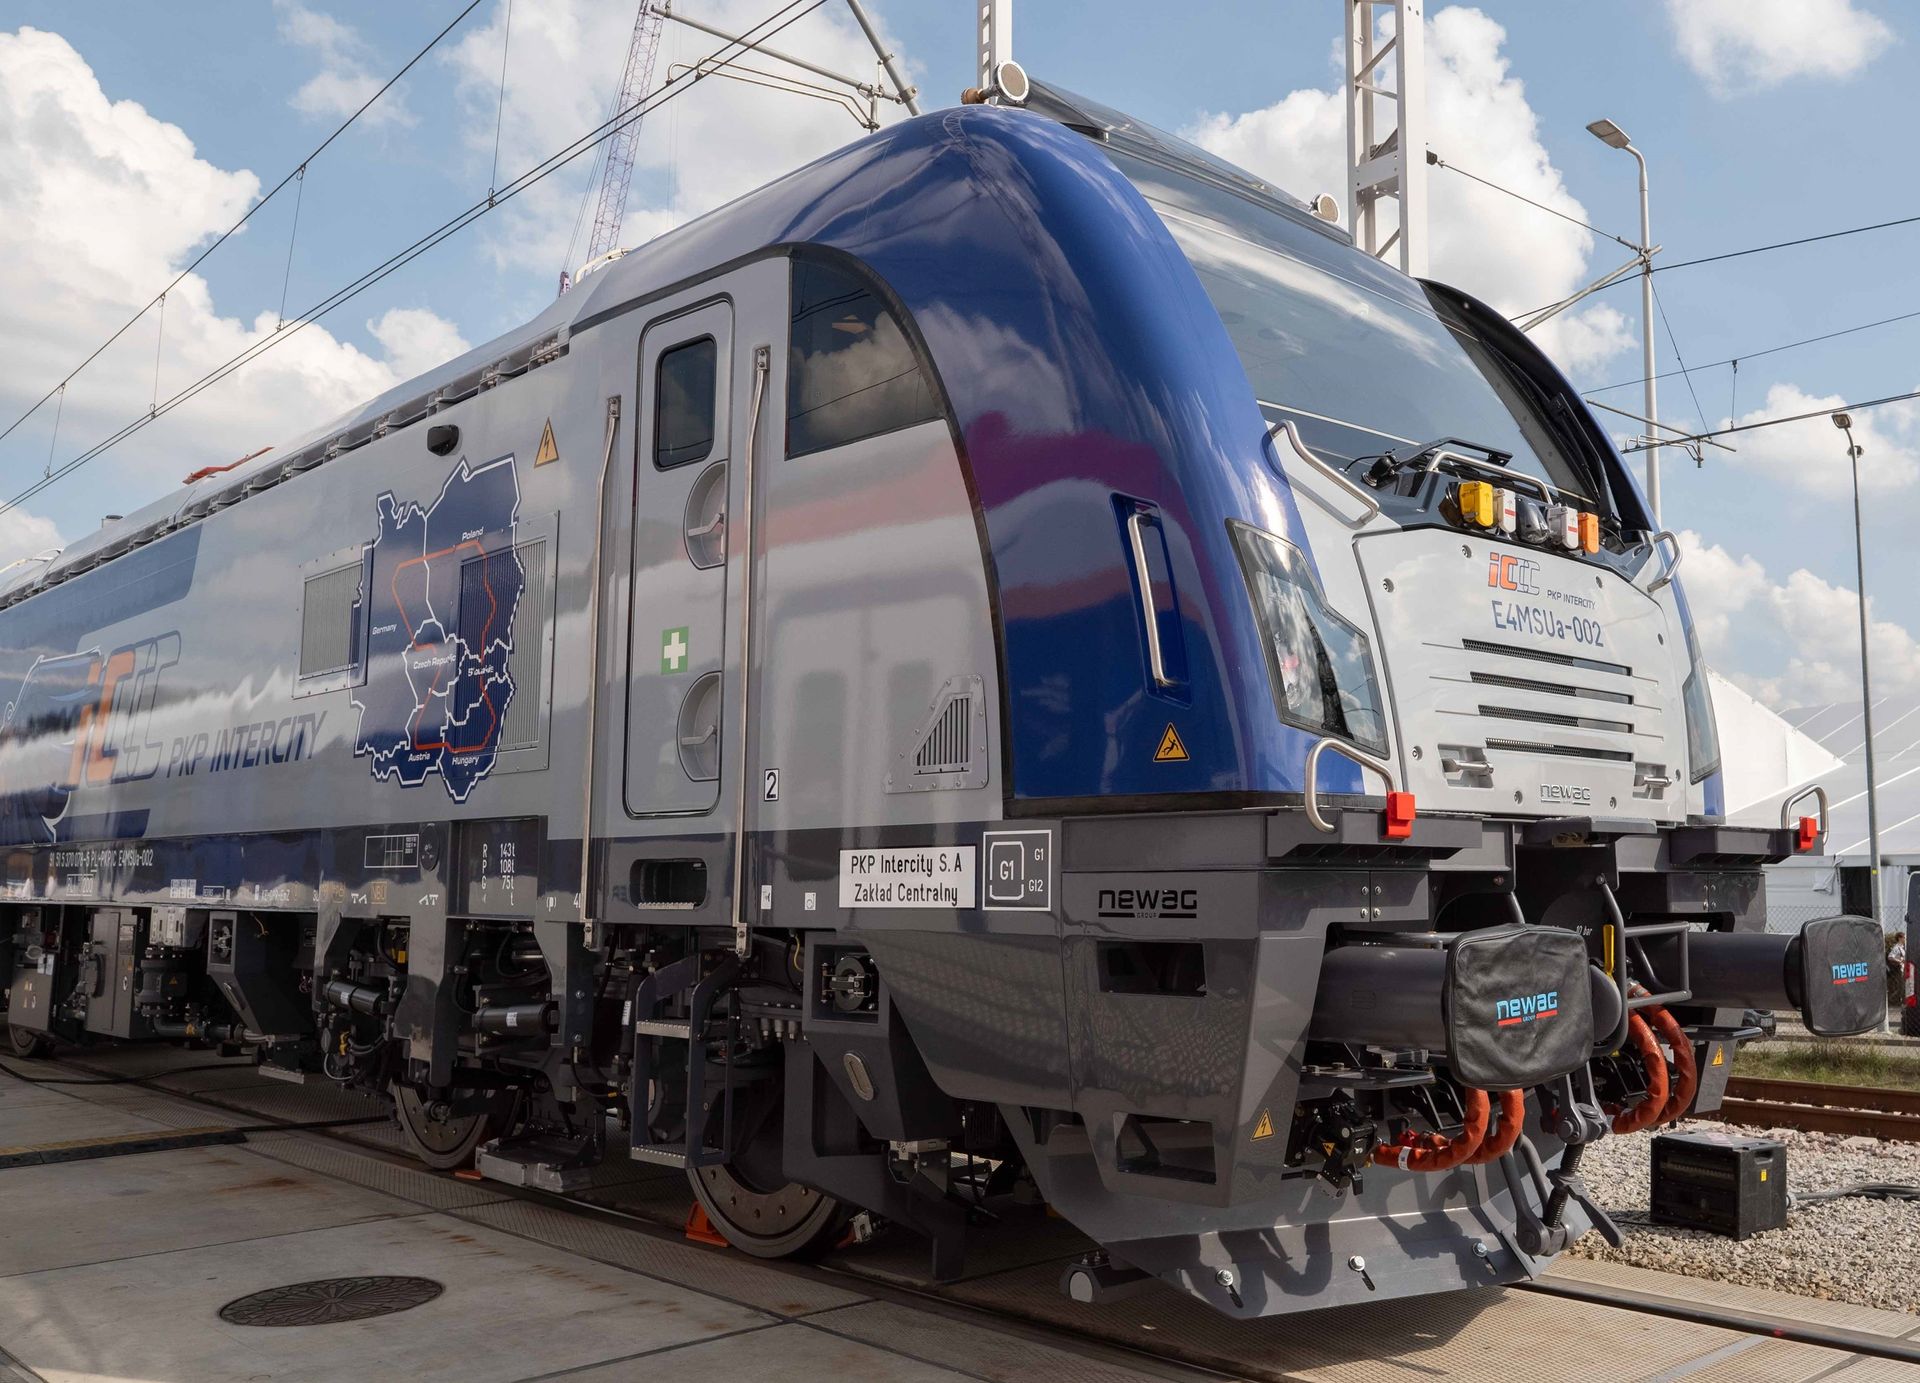 Kolejne lokomotywy wielosystemowe o prędkości 200 km/h zasilą park taborowy PKP Intercity